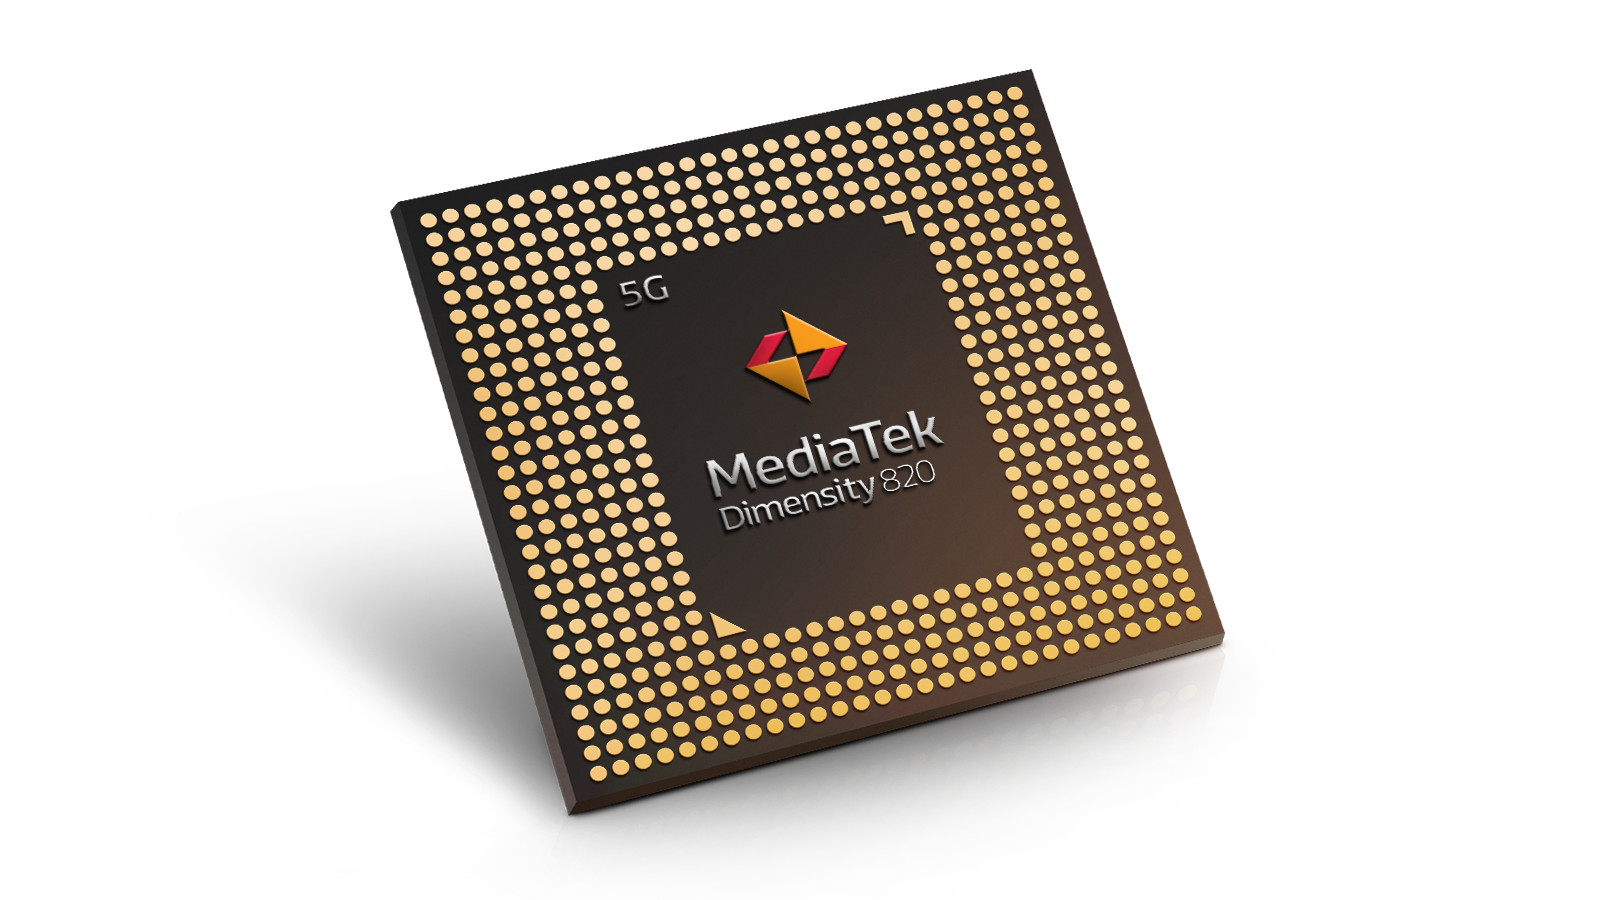 The MediaTek Dimensity 820 chipset.